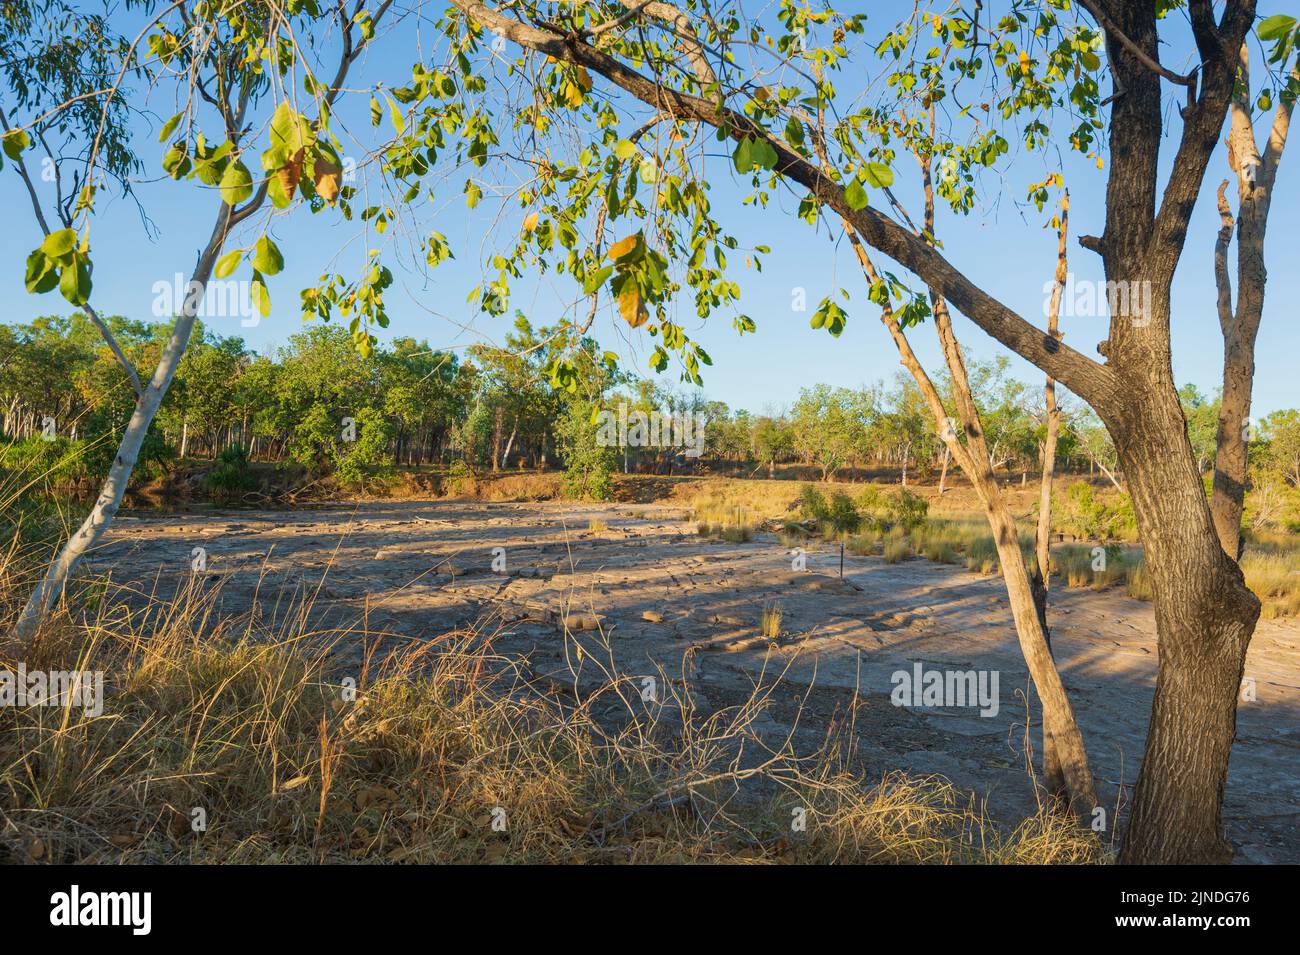 Le lit sec de la rivière East Baines dans le parc national Judbarra/Gregory, territoire du Nord, territoire du Nord, Australie Banque D'Images